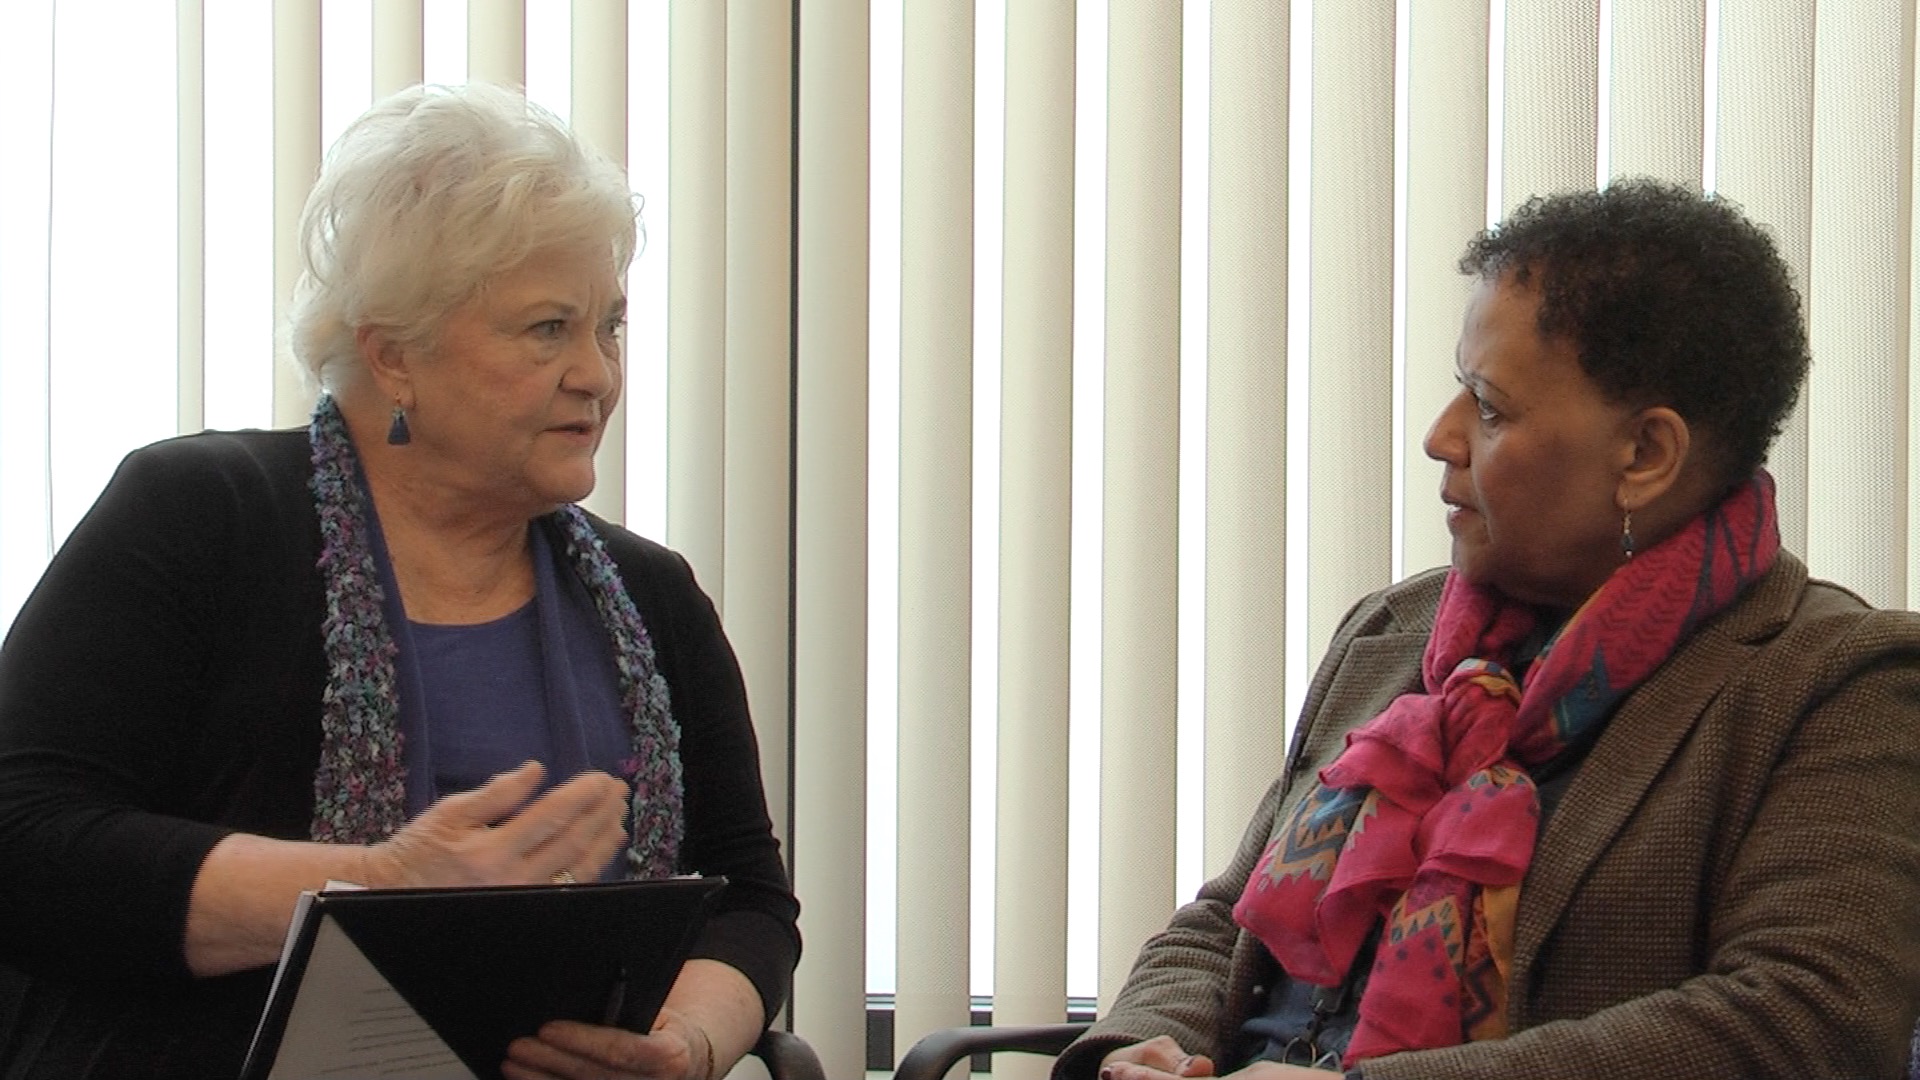 Ann Beckett interviewed by Dr. Benner